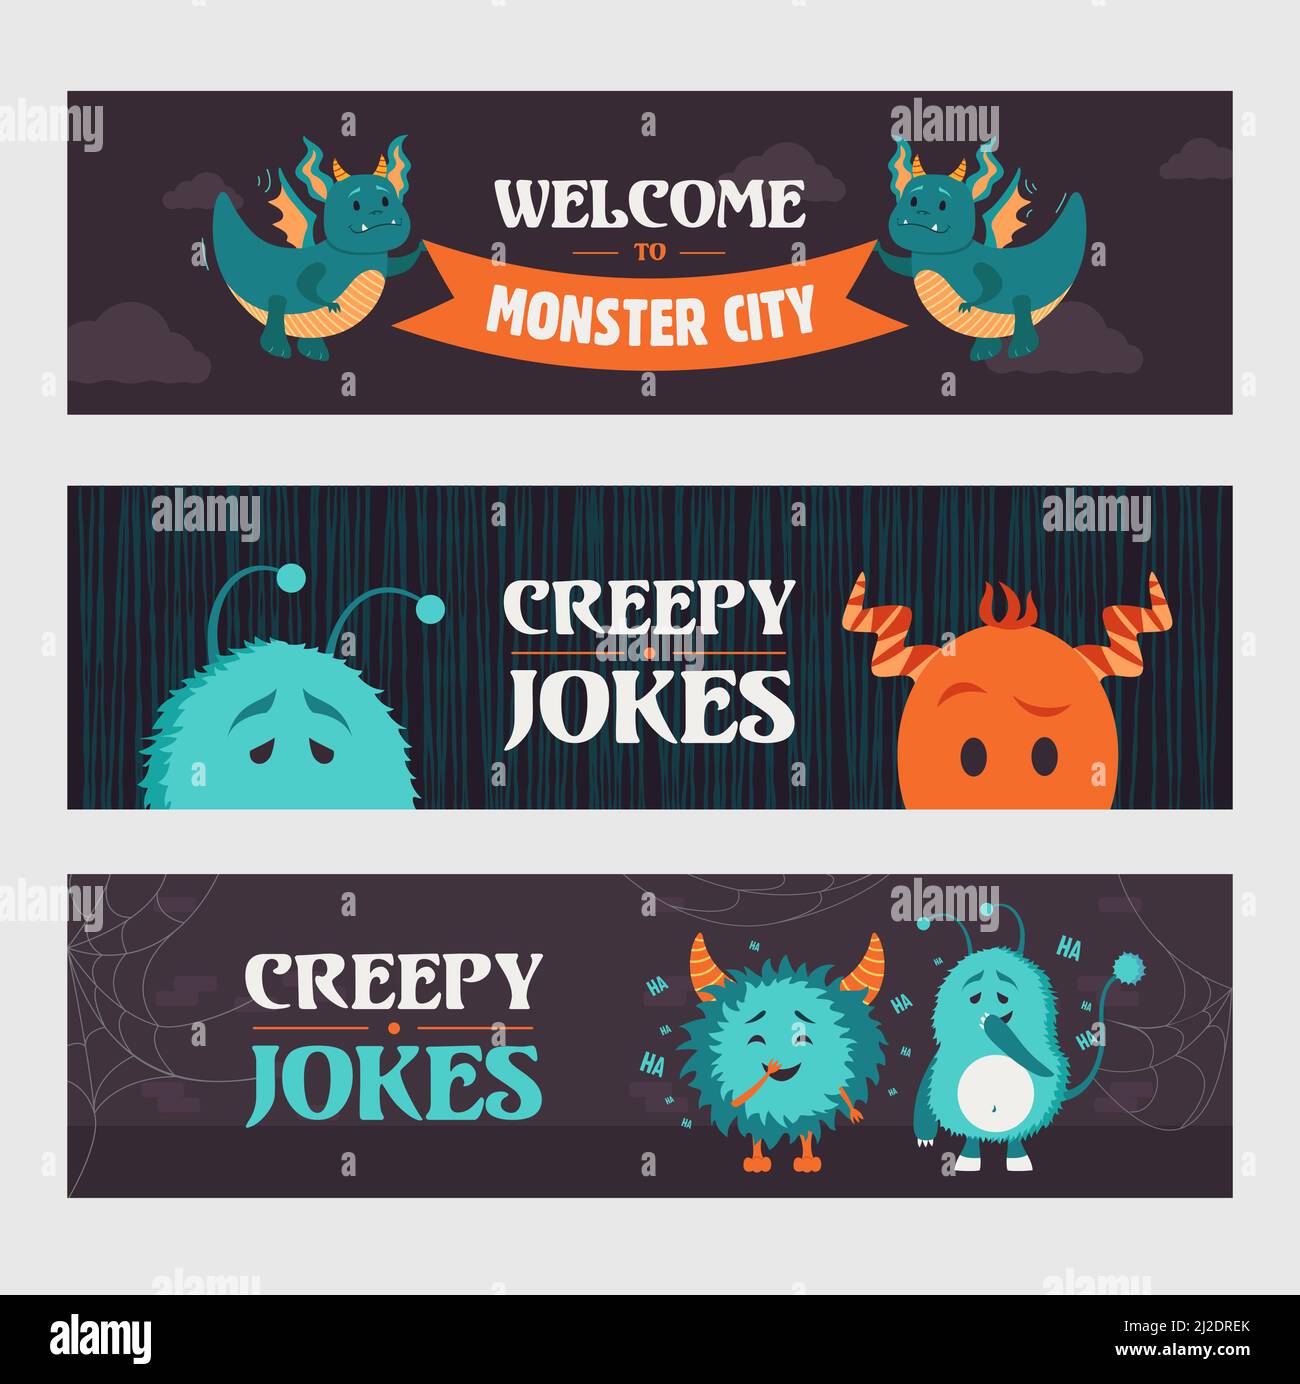 Gruselige Witze Banner-Designs für Party. Niedliche Monster und Kreaturen auf dunklem Hintergrund. Halloween und Feiertagskonzept. Vorlage für Poster, Promotion o Stock Vektor